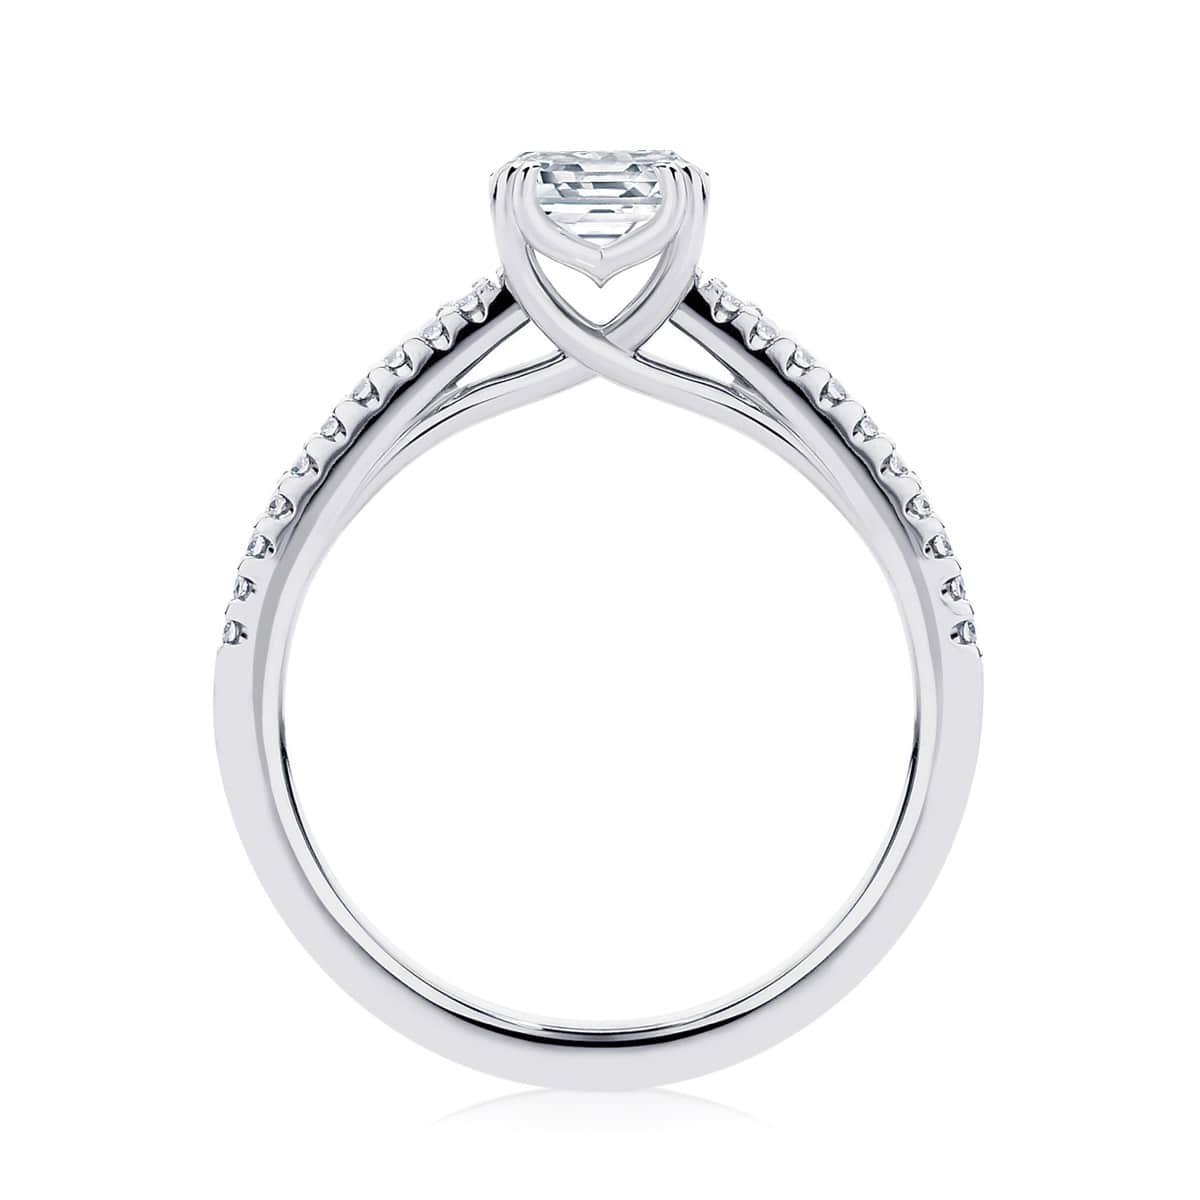 Asscher Diamond with Side Stones Ring in White Gold | Aurelia (Asscher)